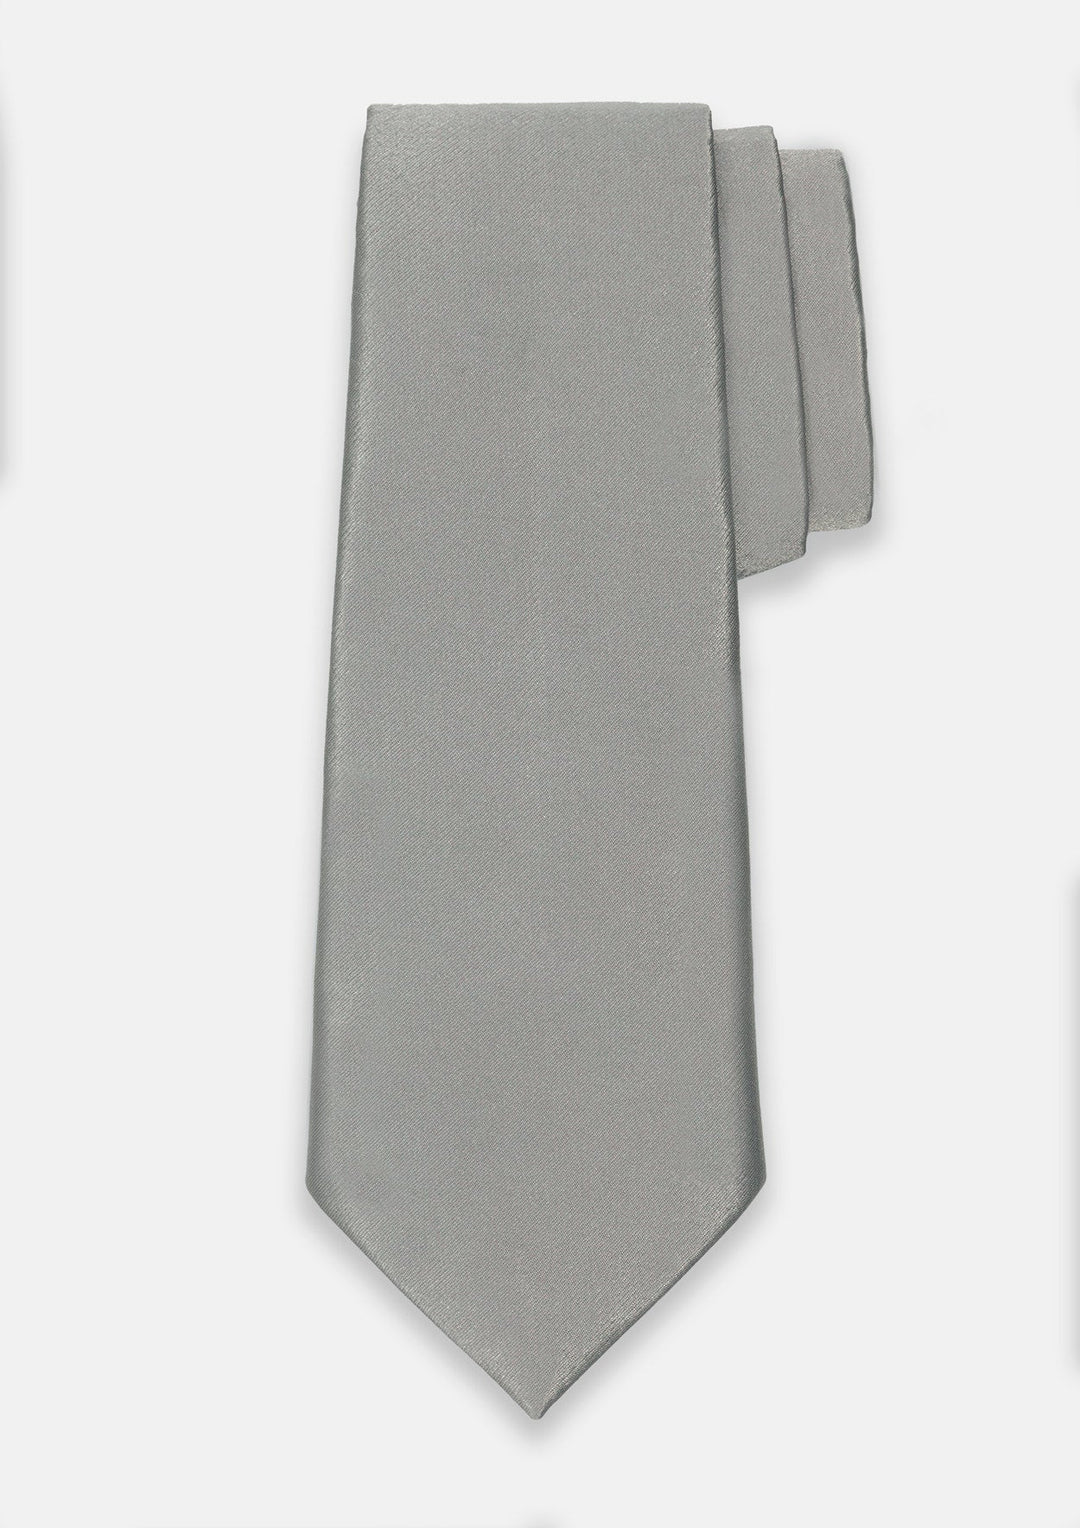 Silver Fox Tie